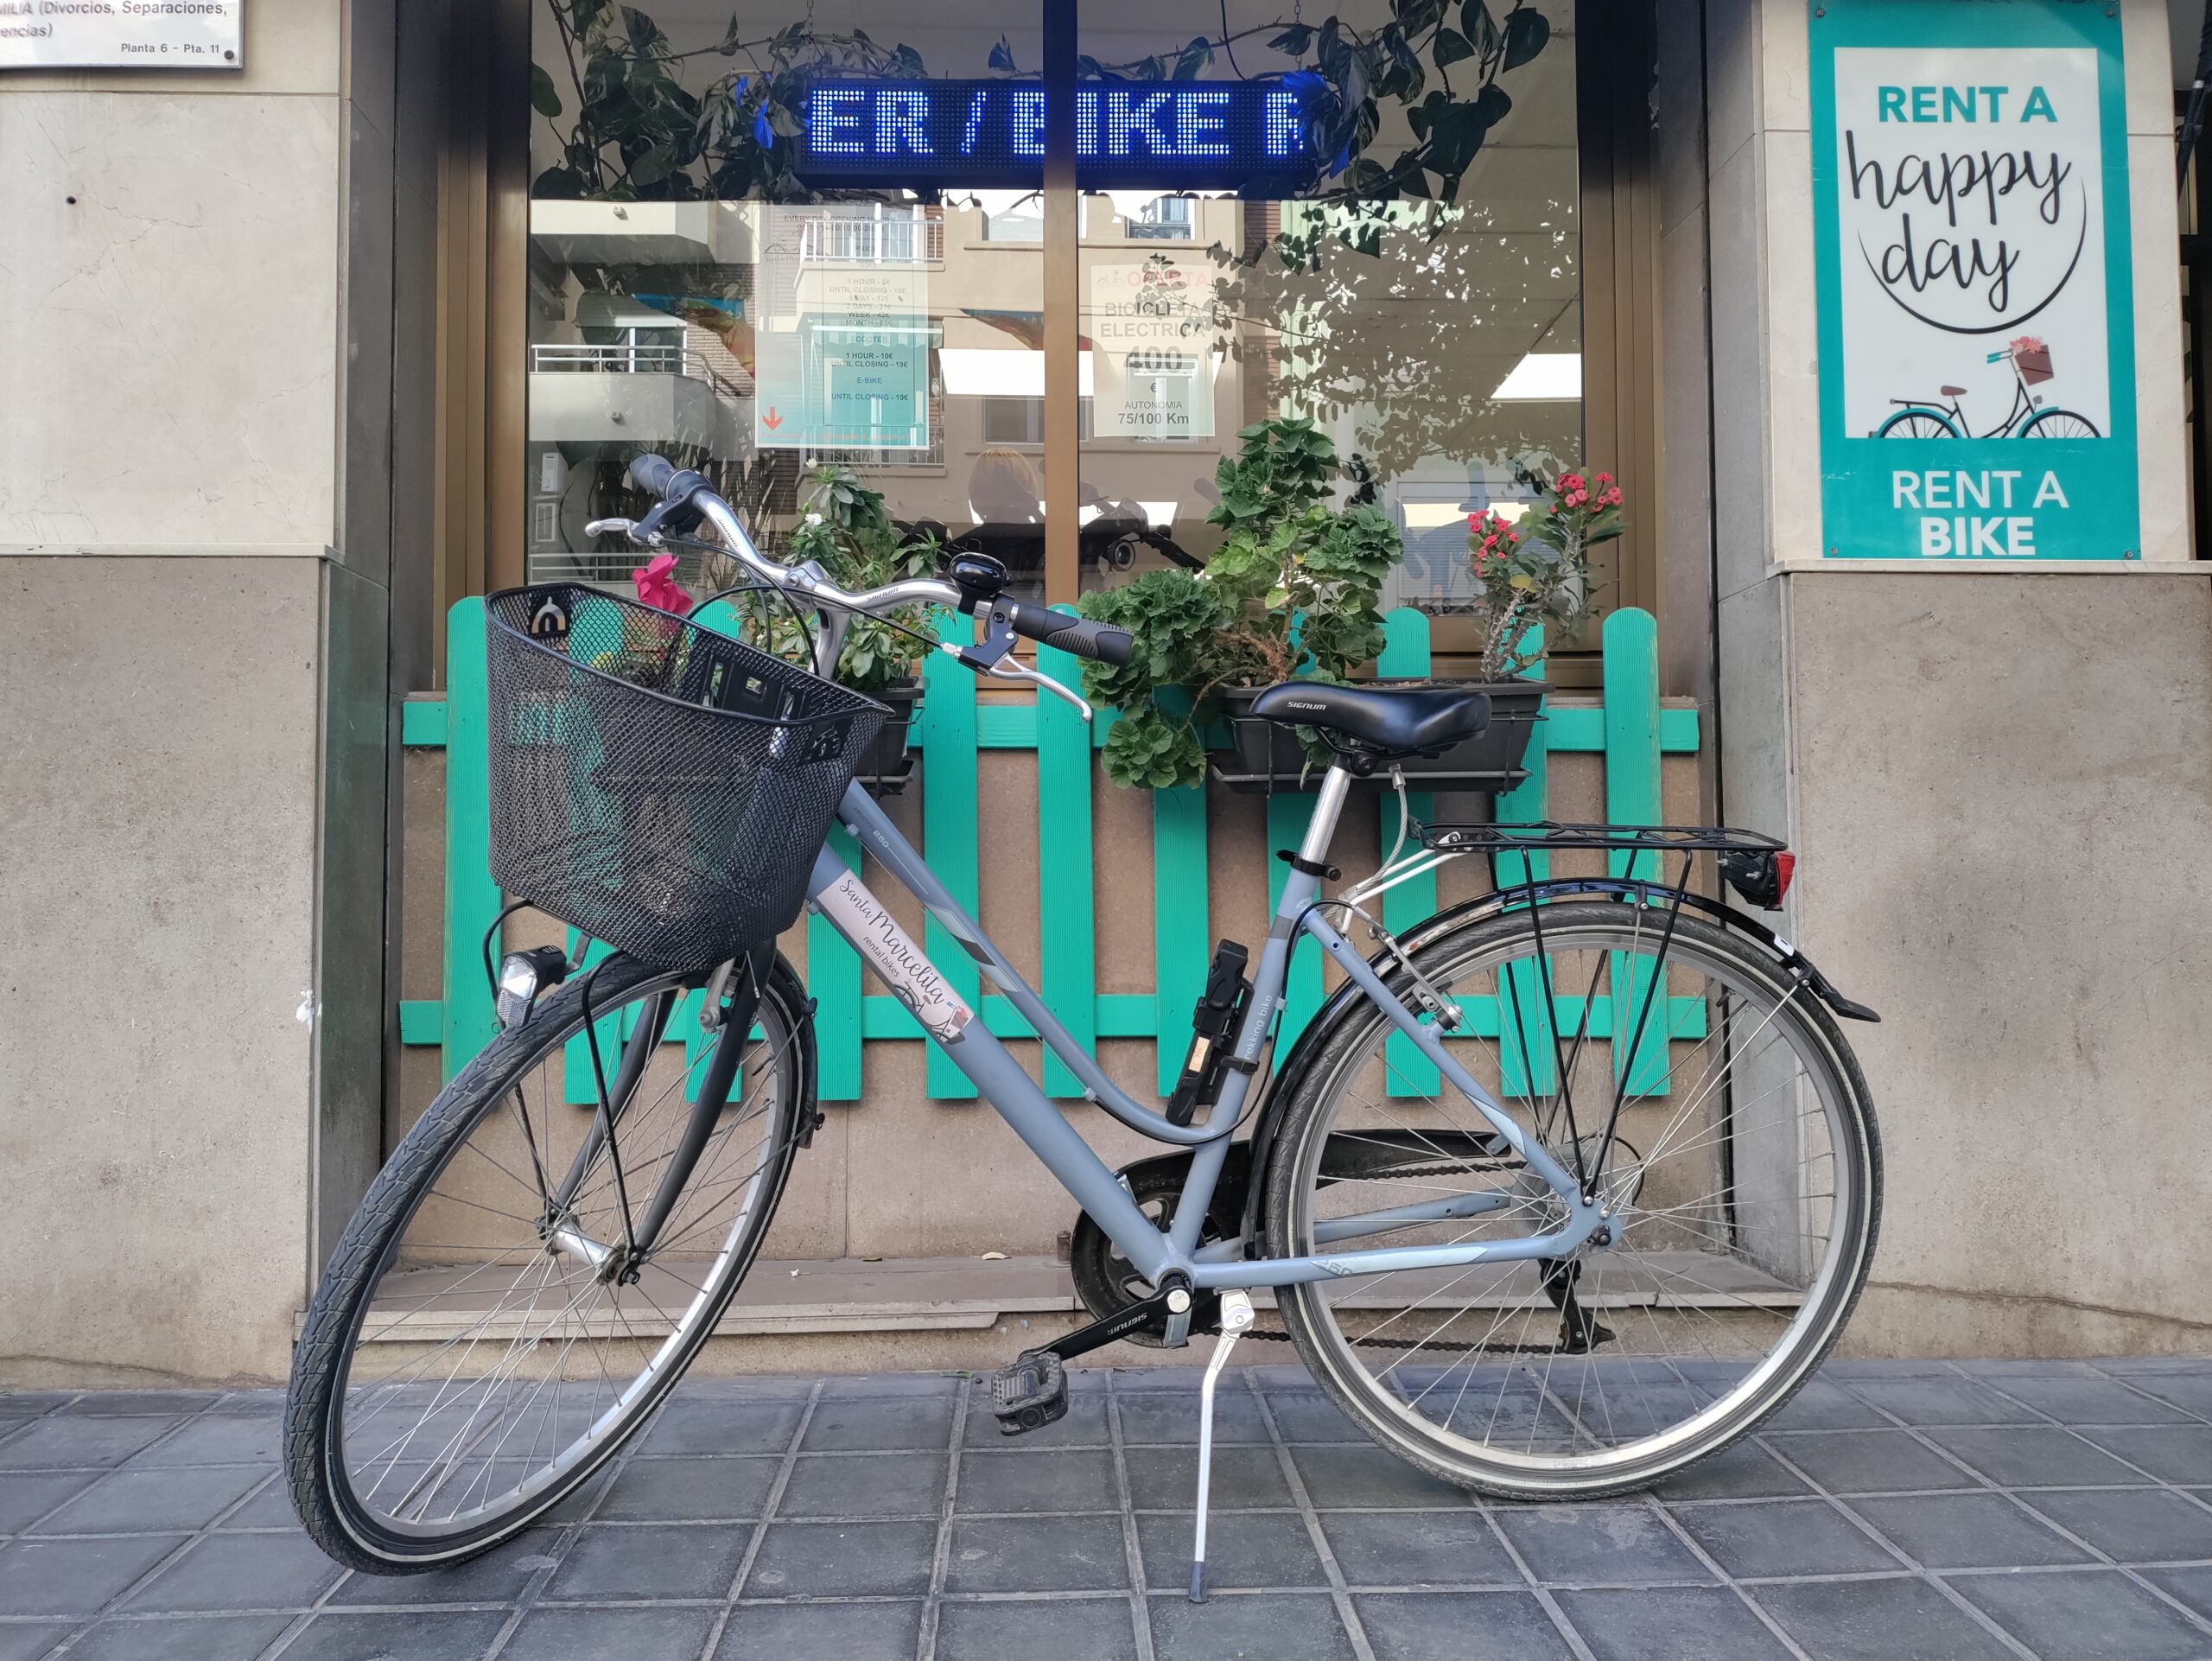 alquiler de bicicletas en valencia - bici ciudad mujer